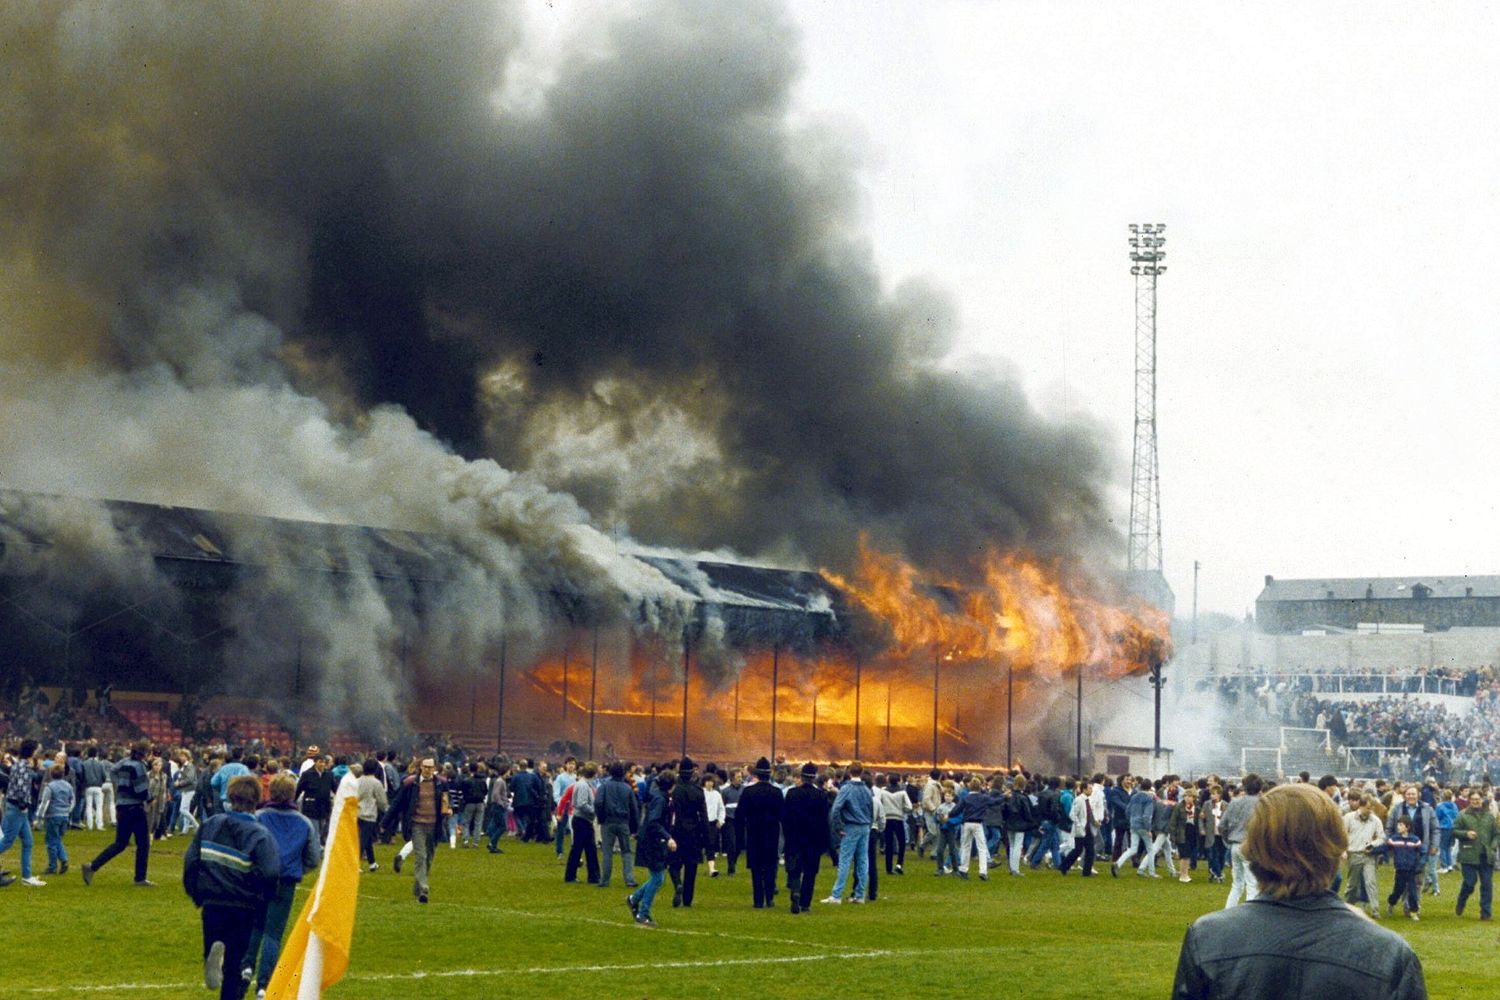 Огни стадиона. Bradford City стадион пожар. Брэдфорд Сити 1985. Пожар на футбольном стадионе 1985 Брэдфорд. Пожар на стадионе в Англии в 1985 году.